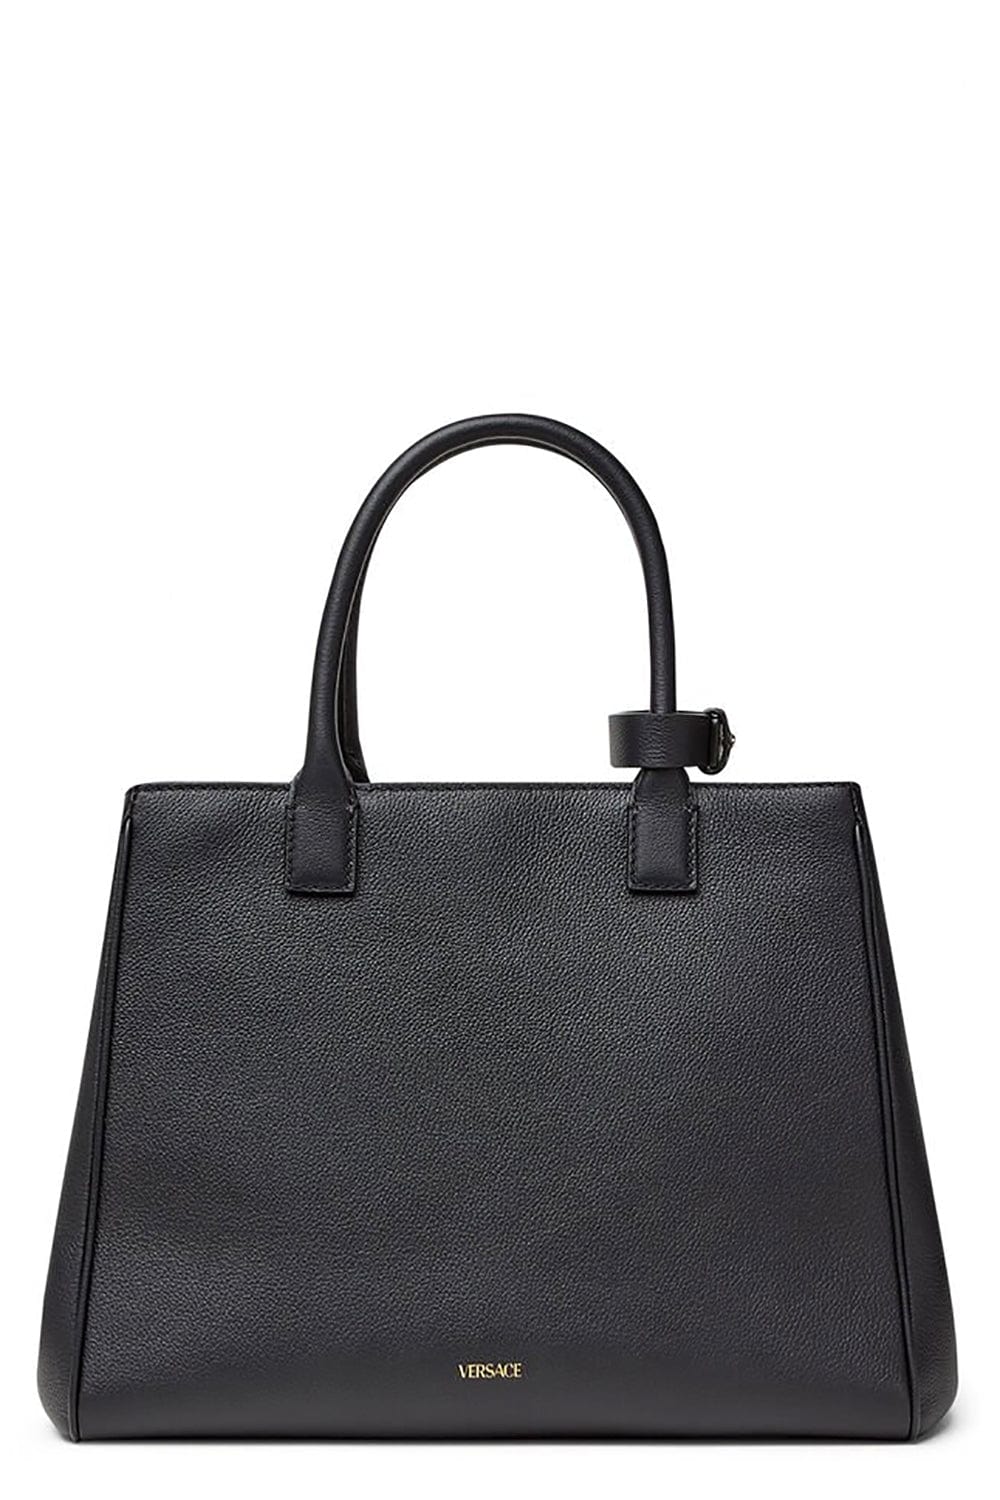 Versace Bag Strap in Black